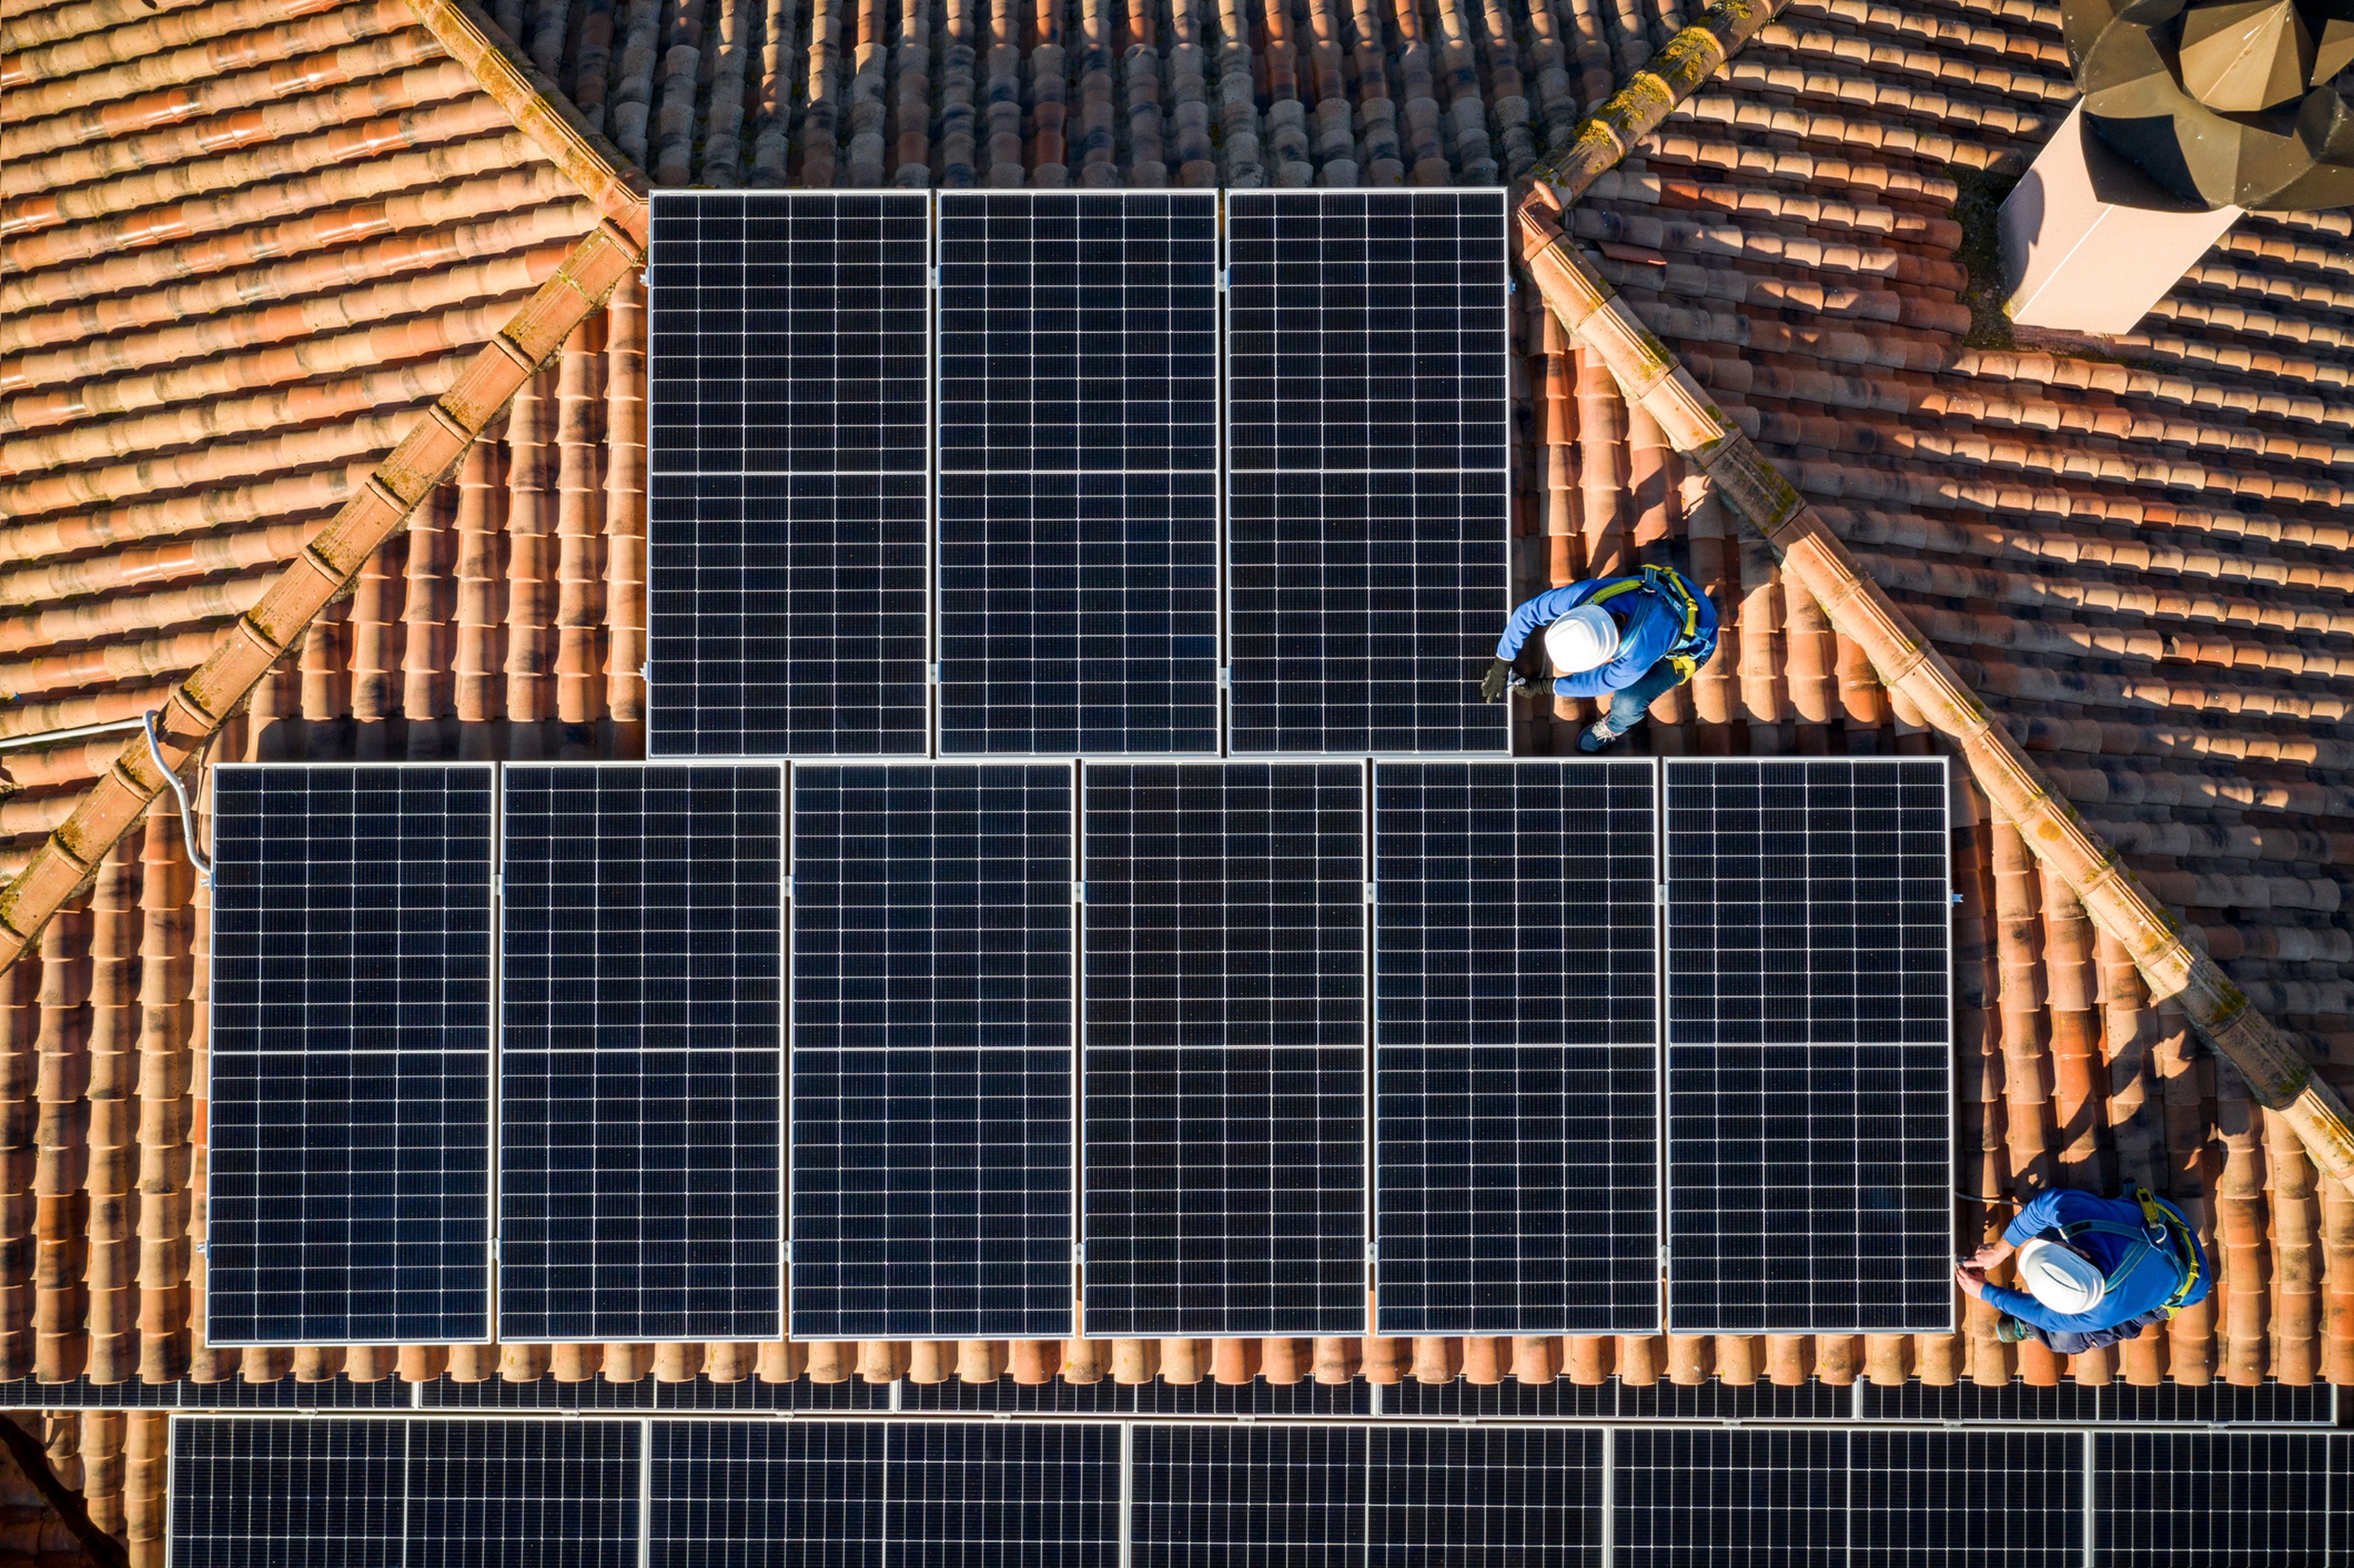 2 personas instalan unas placas solares en un tejado.